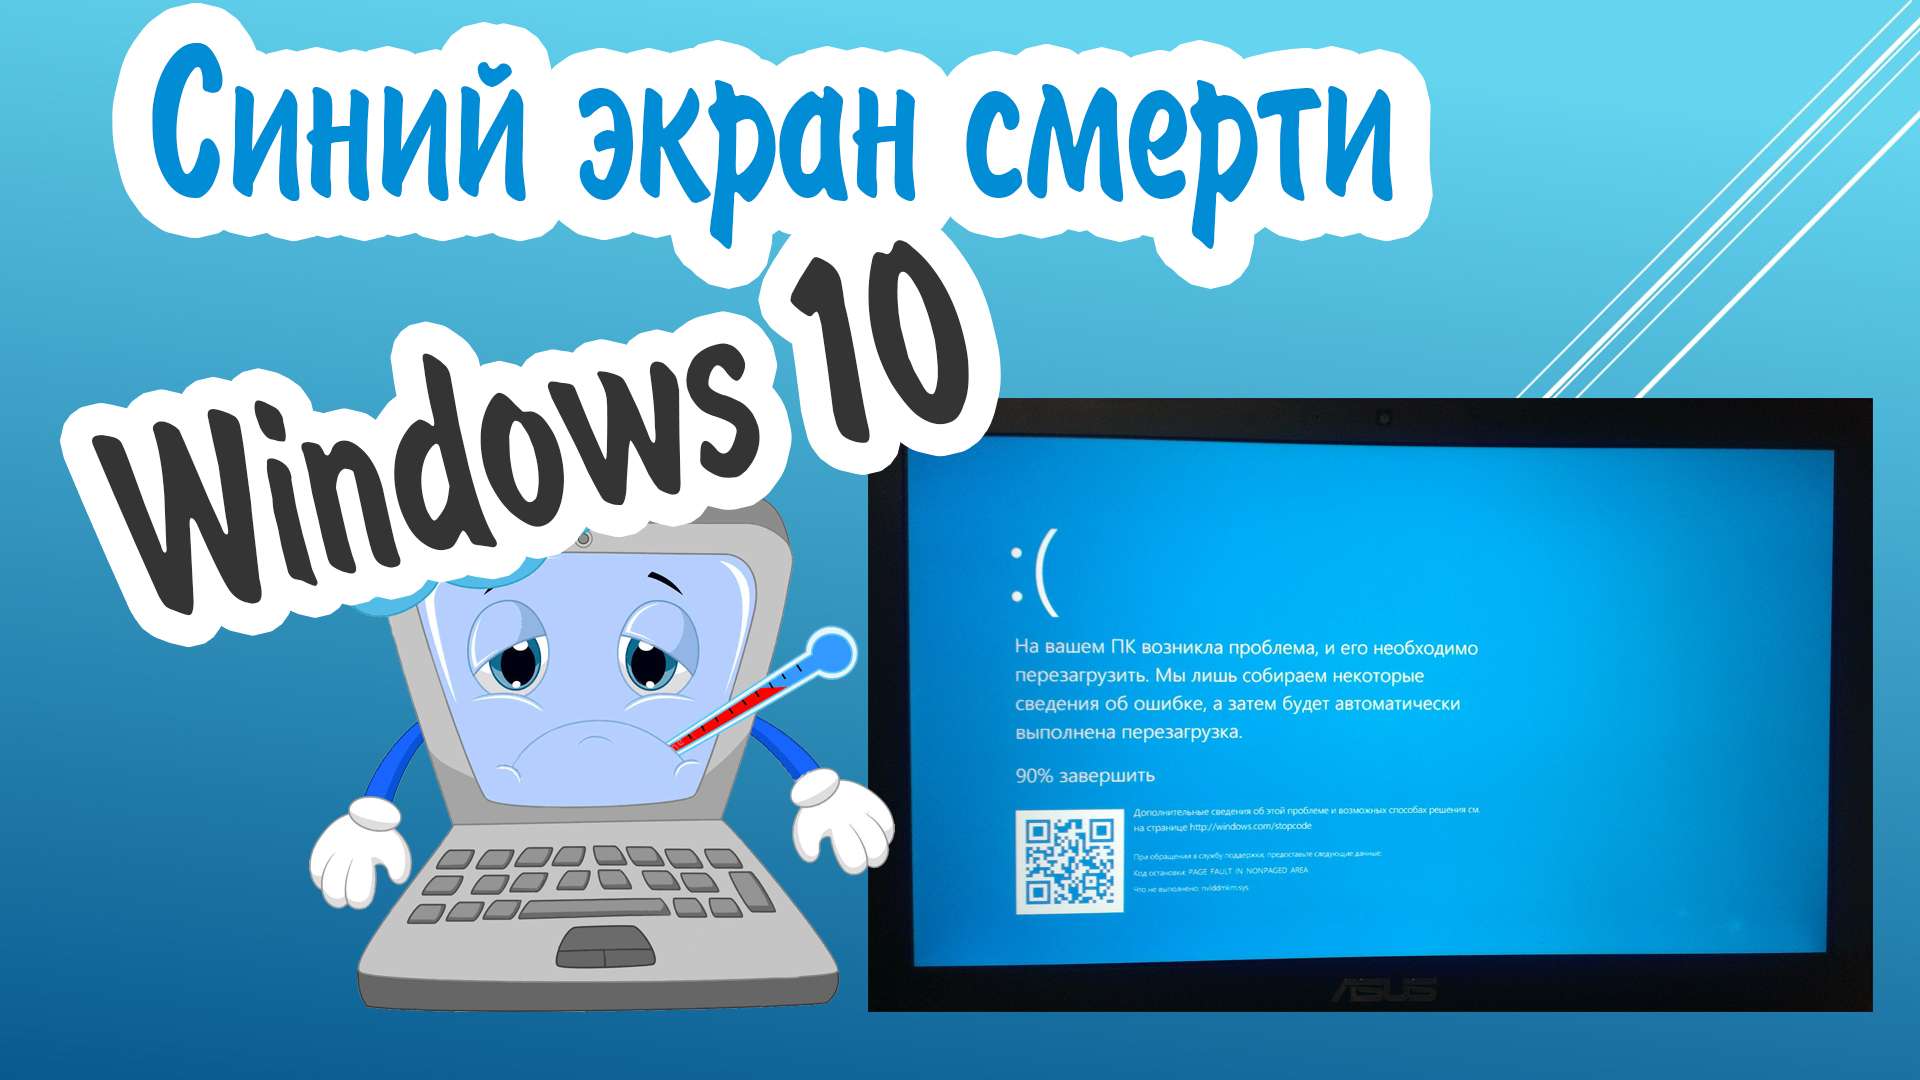 Как узнать причину синего экрана смерти в Windows 10?